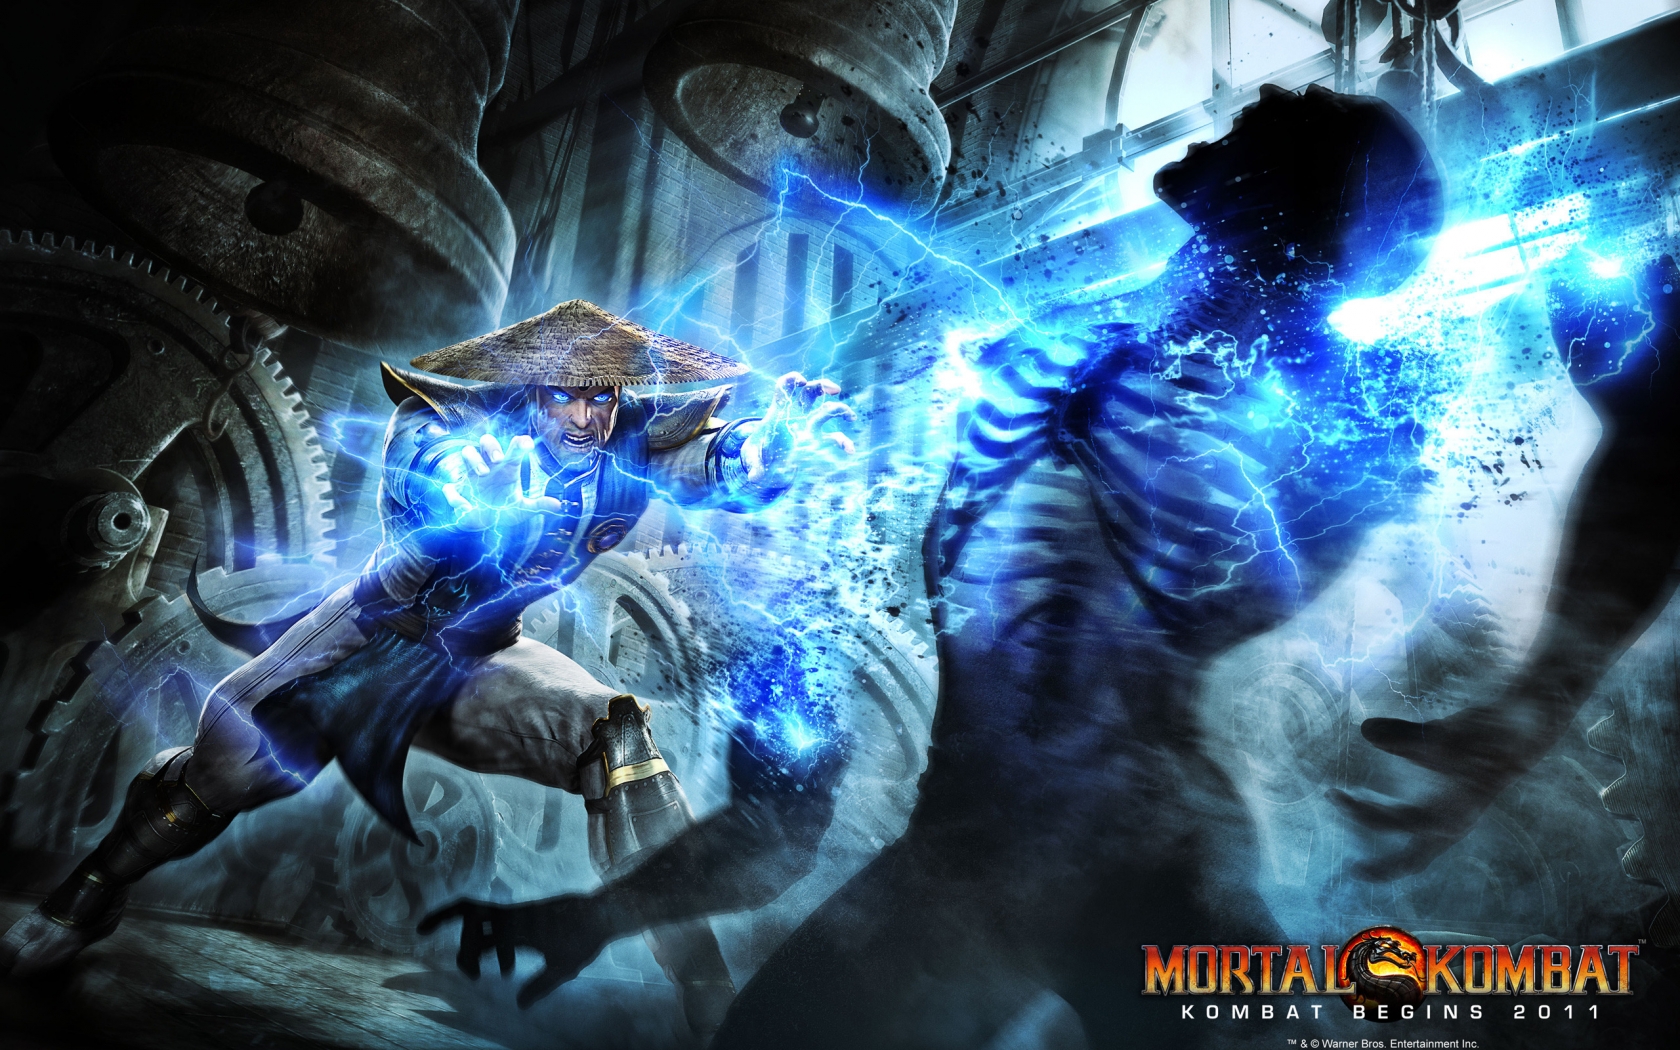 Mortal Kombat Raiden for 1680 x 1050 widescreen resolution